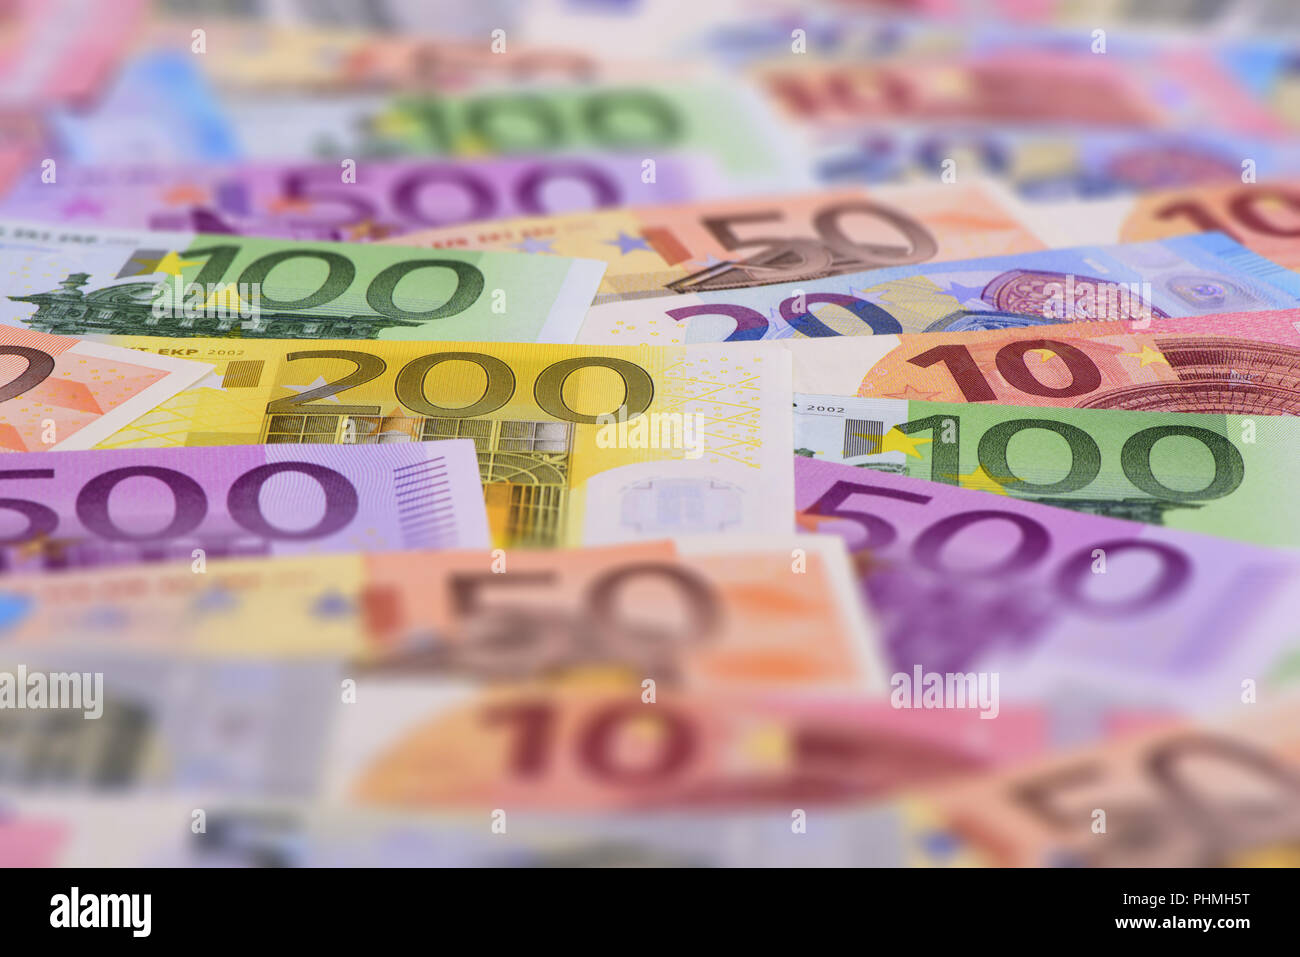 Beaucoup de billets de monnaie européenne Banque D'Images